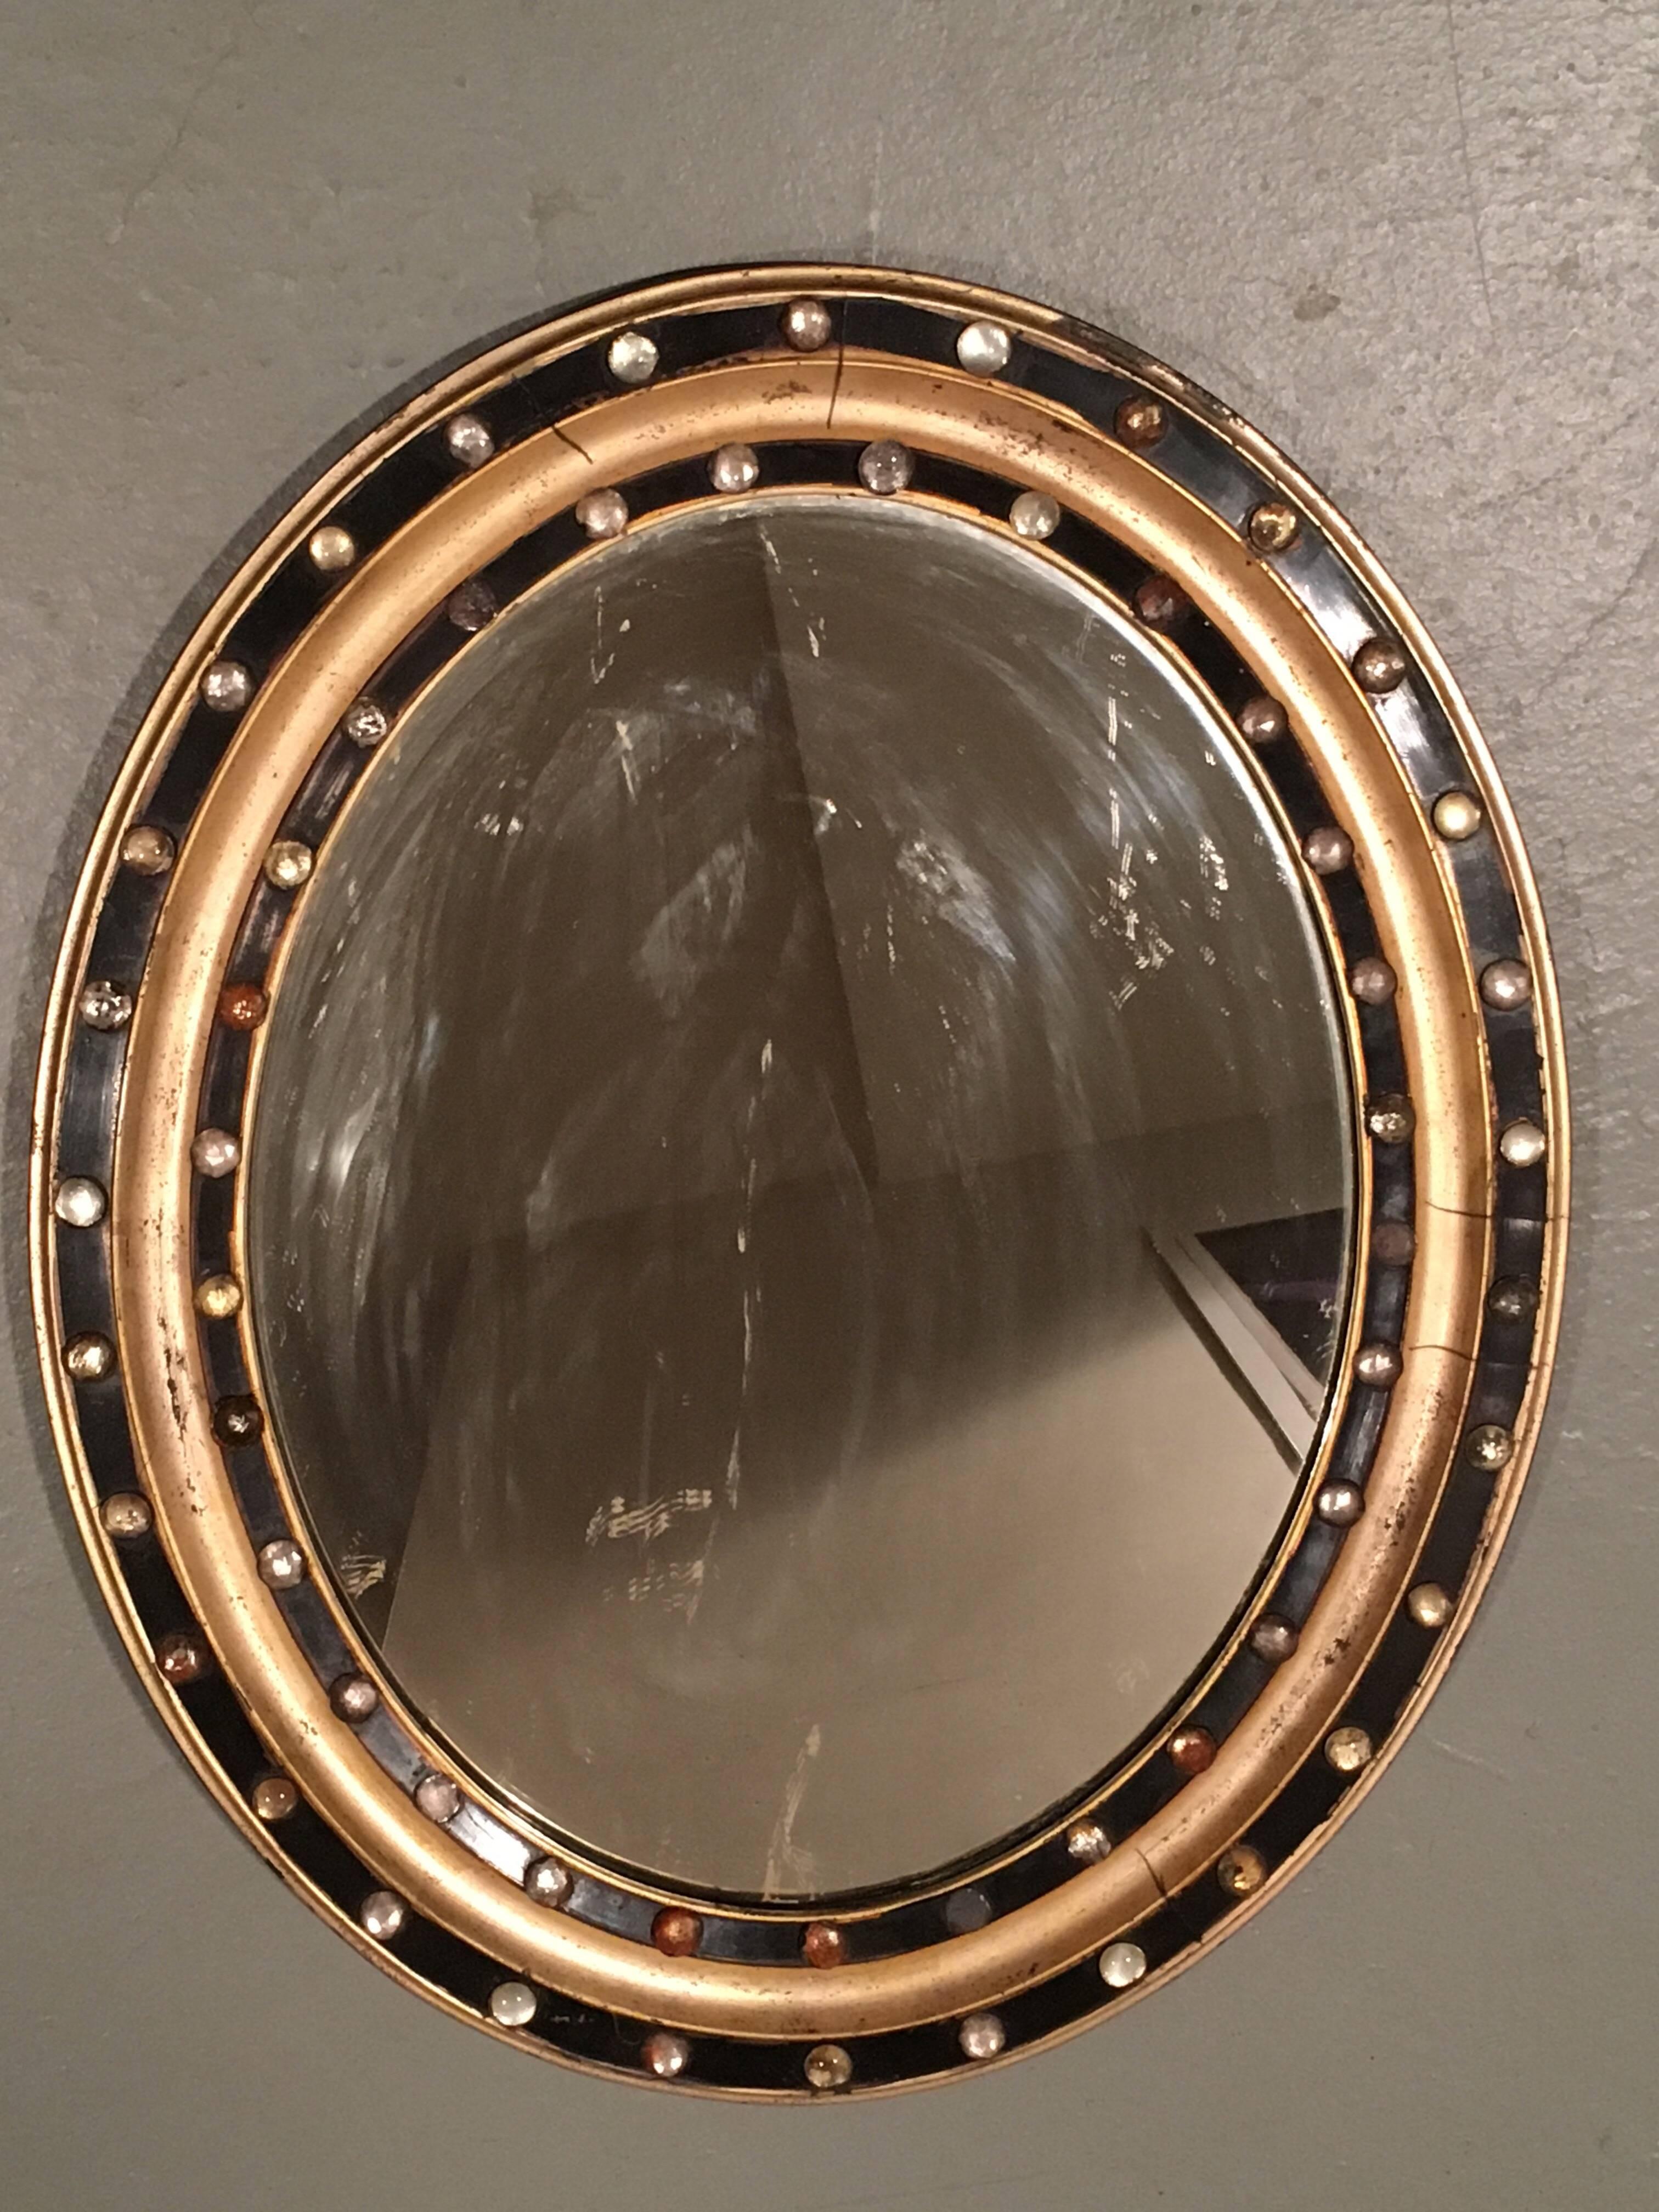 Ovaler Spiegel im Regency-Stil mit facettierten Glasstiften, um 1890
Paket vergoldet und schwarz lackiert mit facettierten Glasnieten. Einige Bolzen fehlen.

 